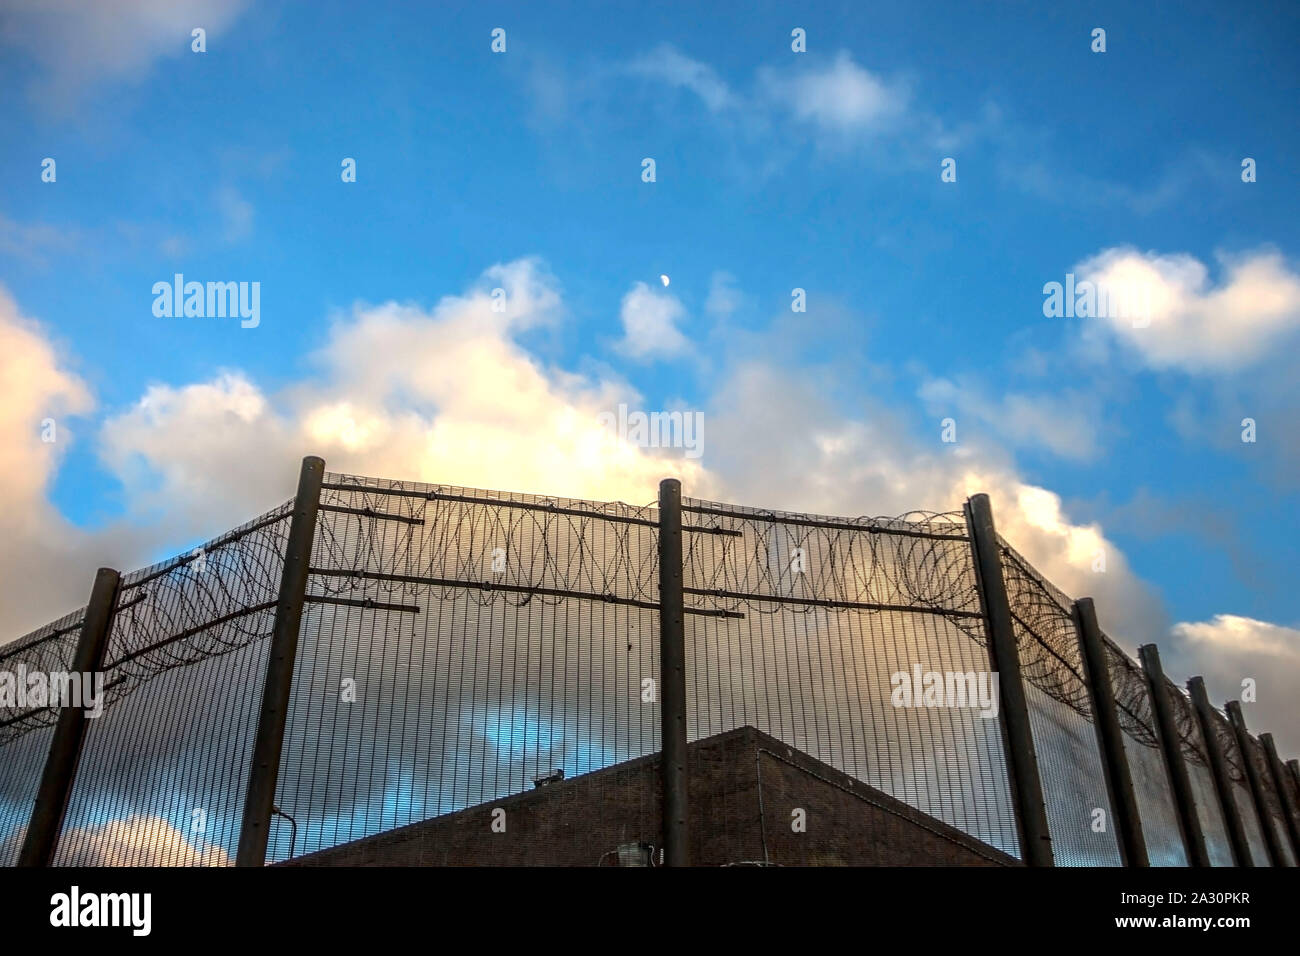 Gefängnismauern und einen Zaun mit Spikes auf dem Hintergrund des blauen Himmels. Peterhead Gefängnis Museum, Aberdeenshire, Schottland, Vereinigtes Königreich. Stockfoto